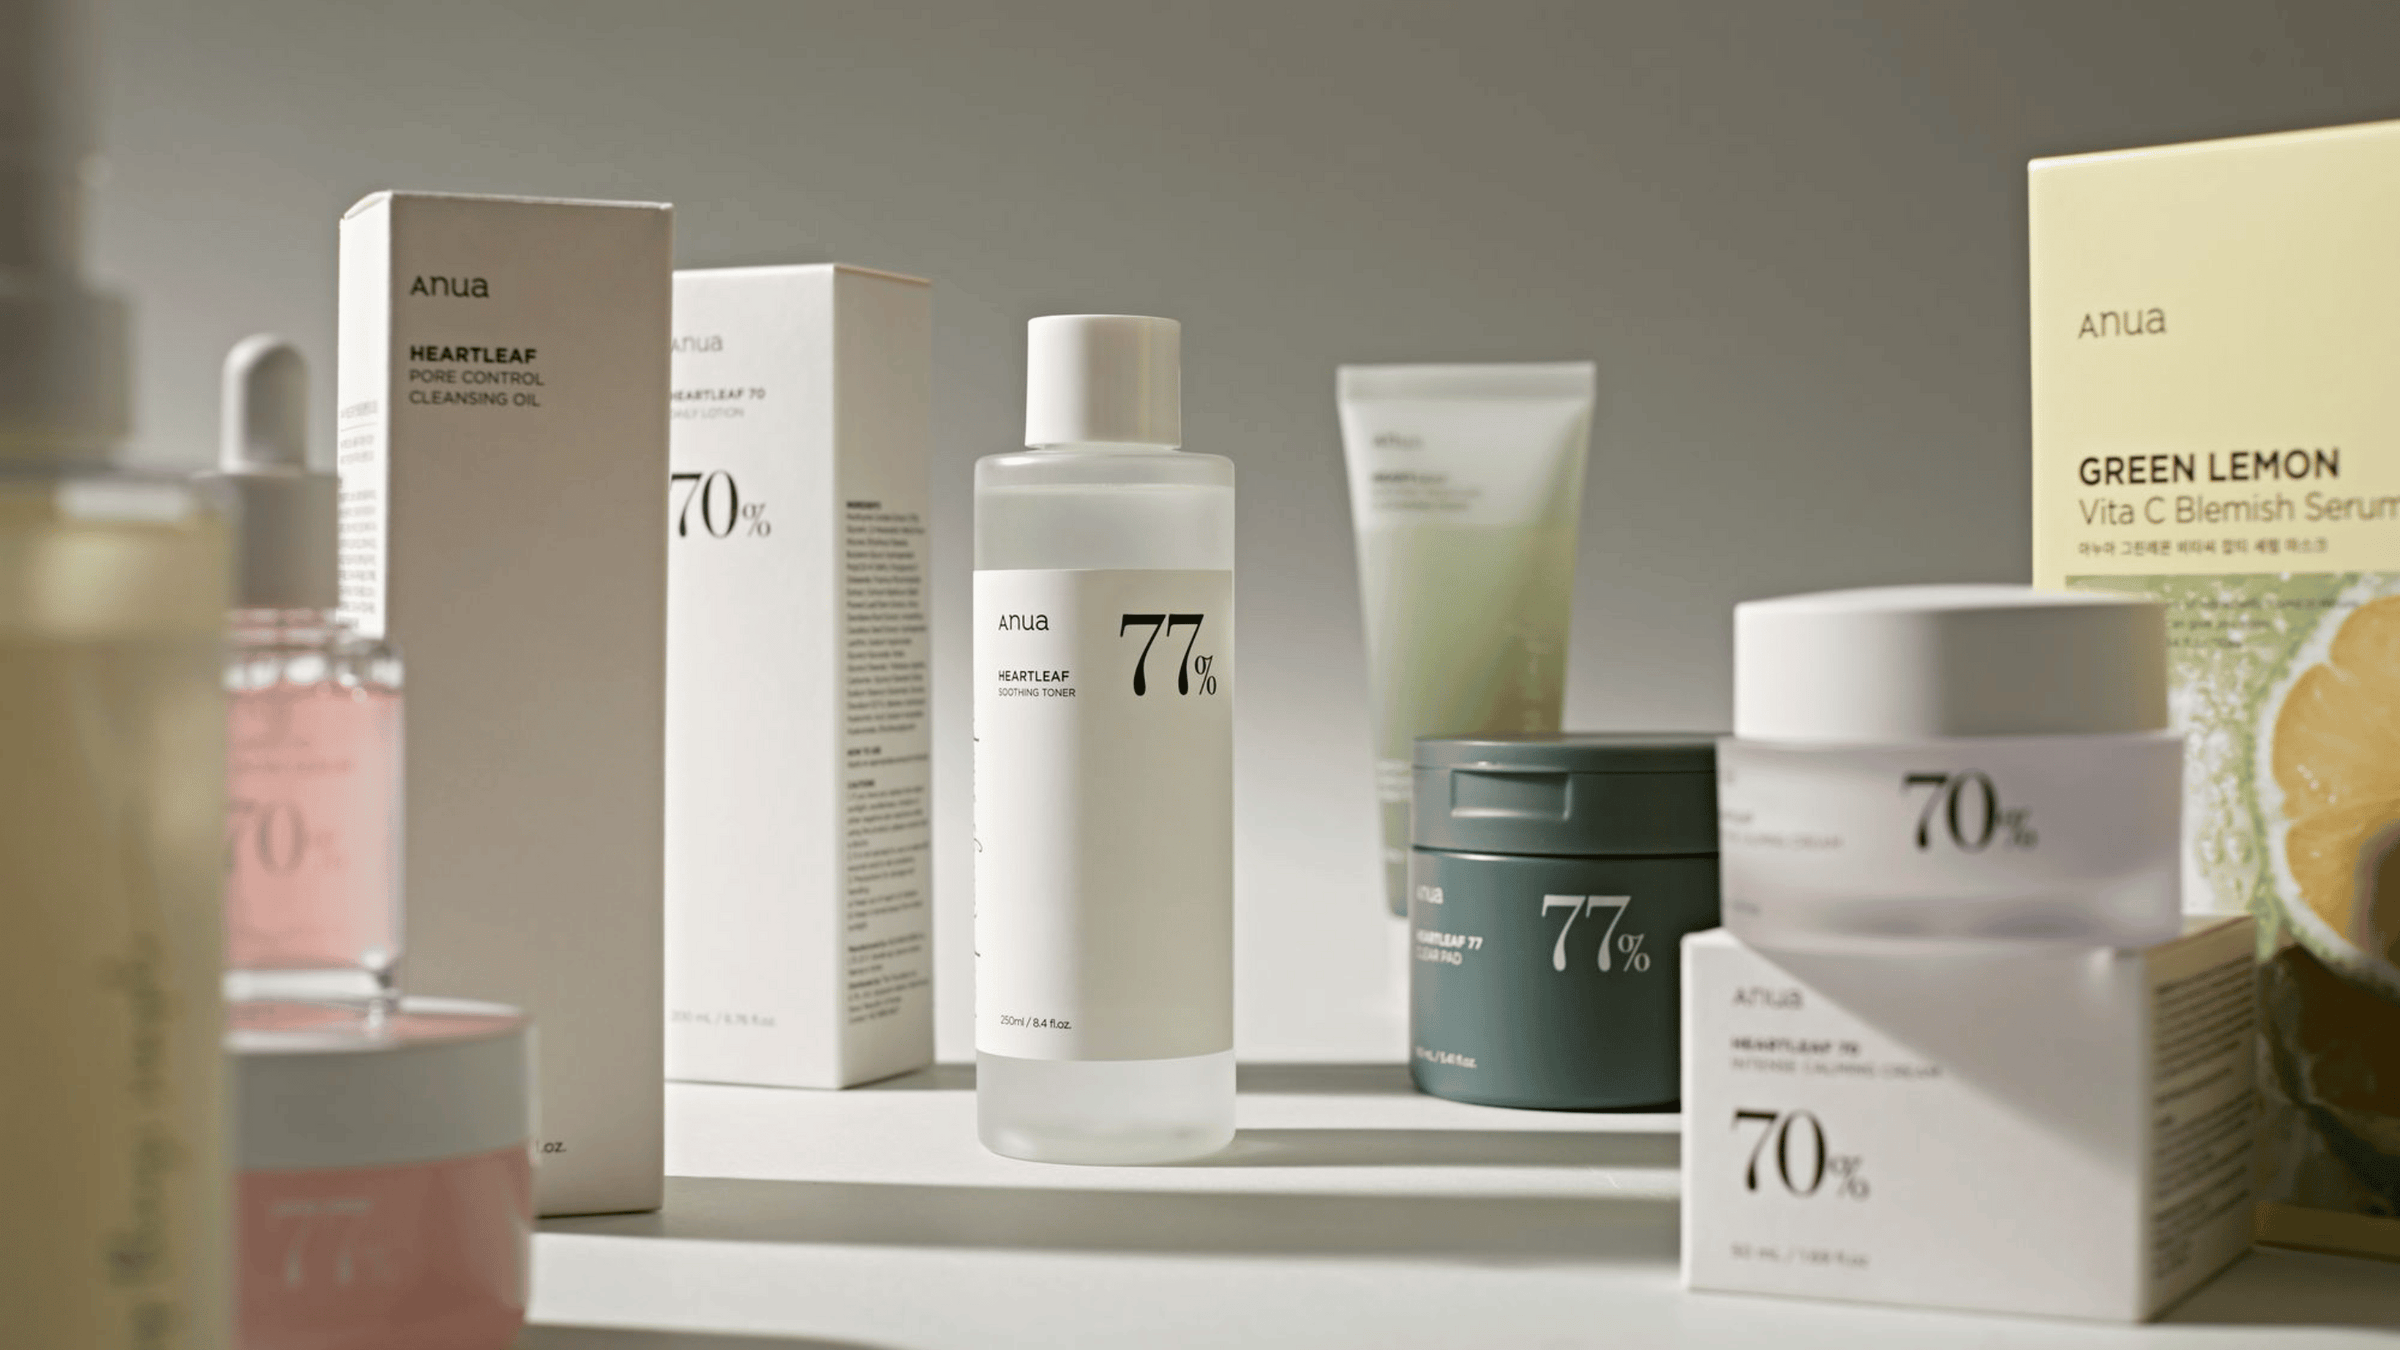 Bilden visar ett utbud av hudvårdsprodukter från märket ANUA. Produkterna framhävs för sina naturliga ingredienser och lugnande egenskaper.